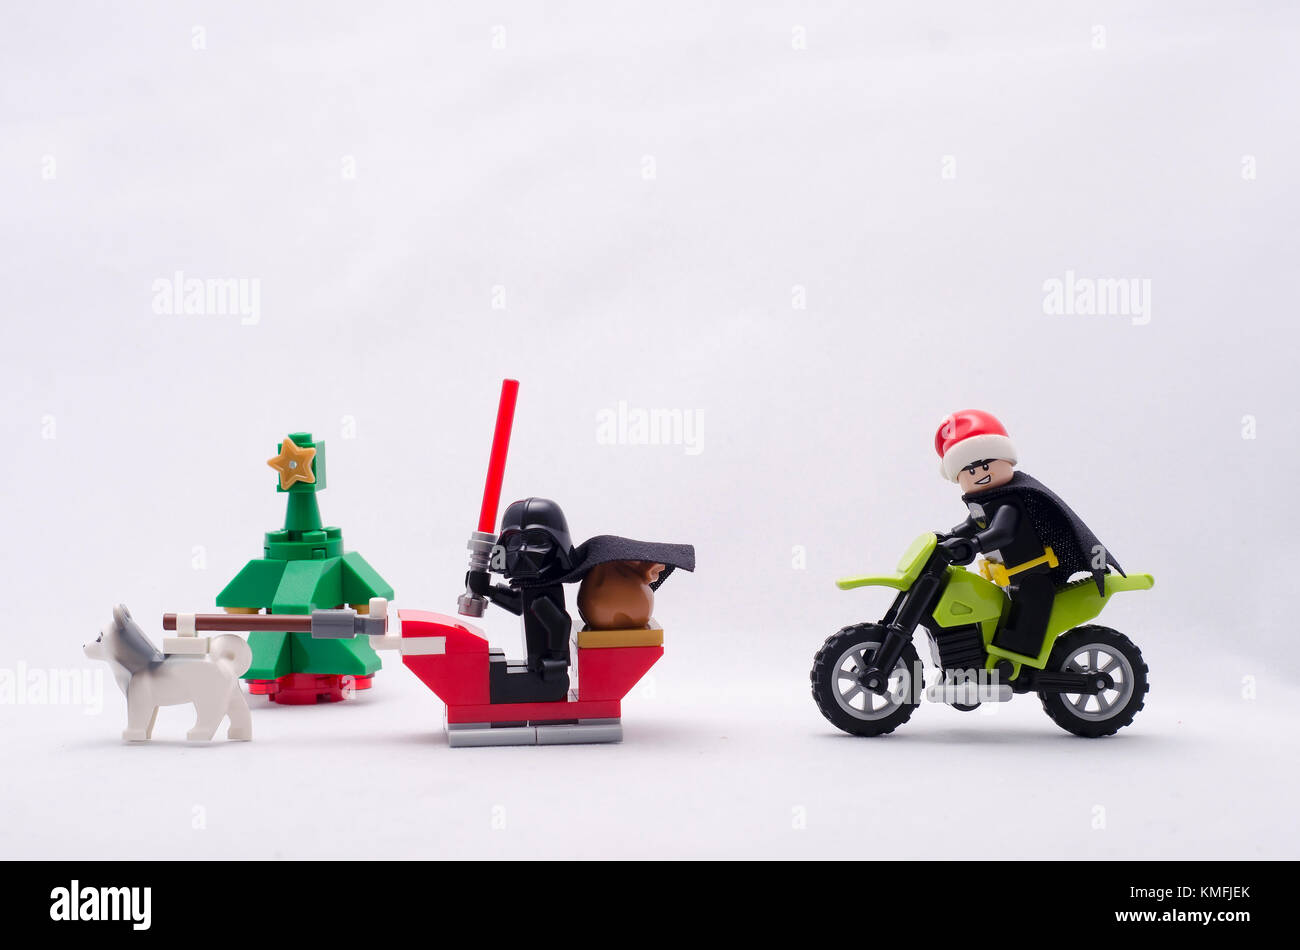 Darth Vader reiten santa claus Schlitten mit Batman Tragen santa hat reiten Dirt Bike. Lego Minifiguren sind von der Lego hergestellt. Stockfoto